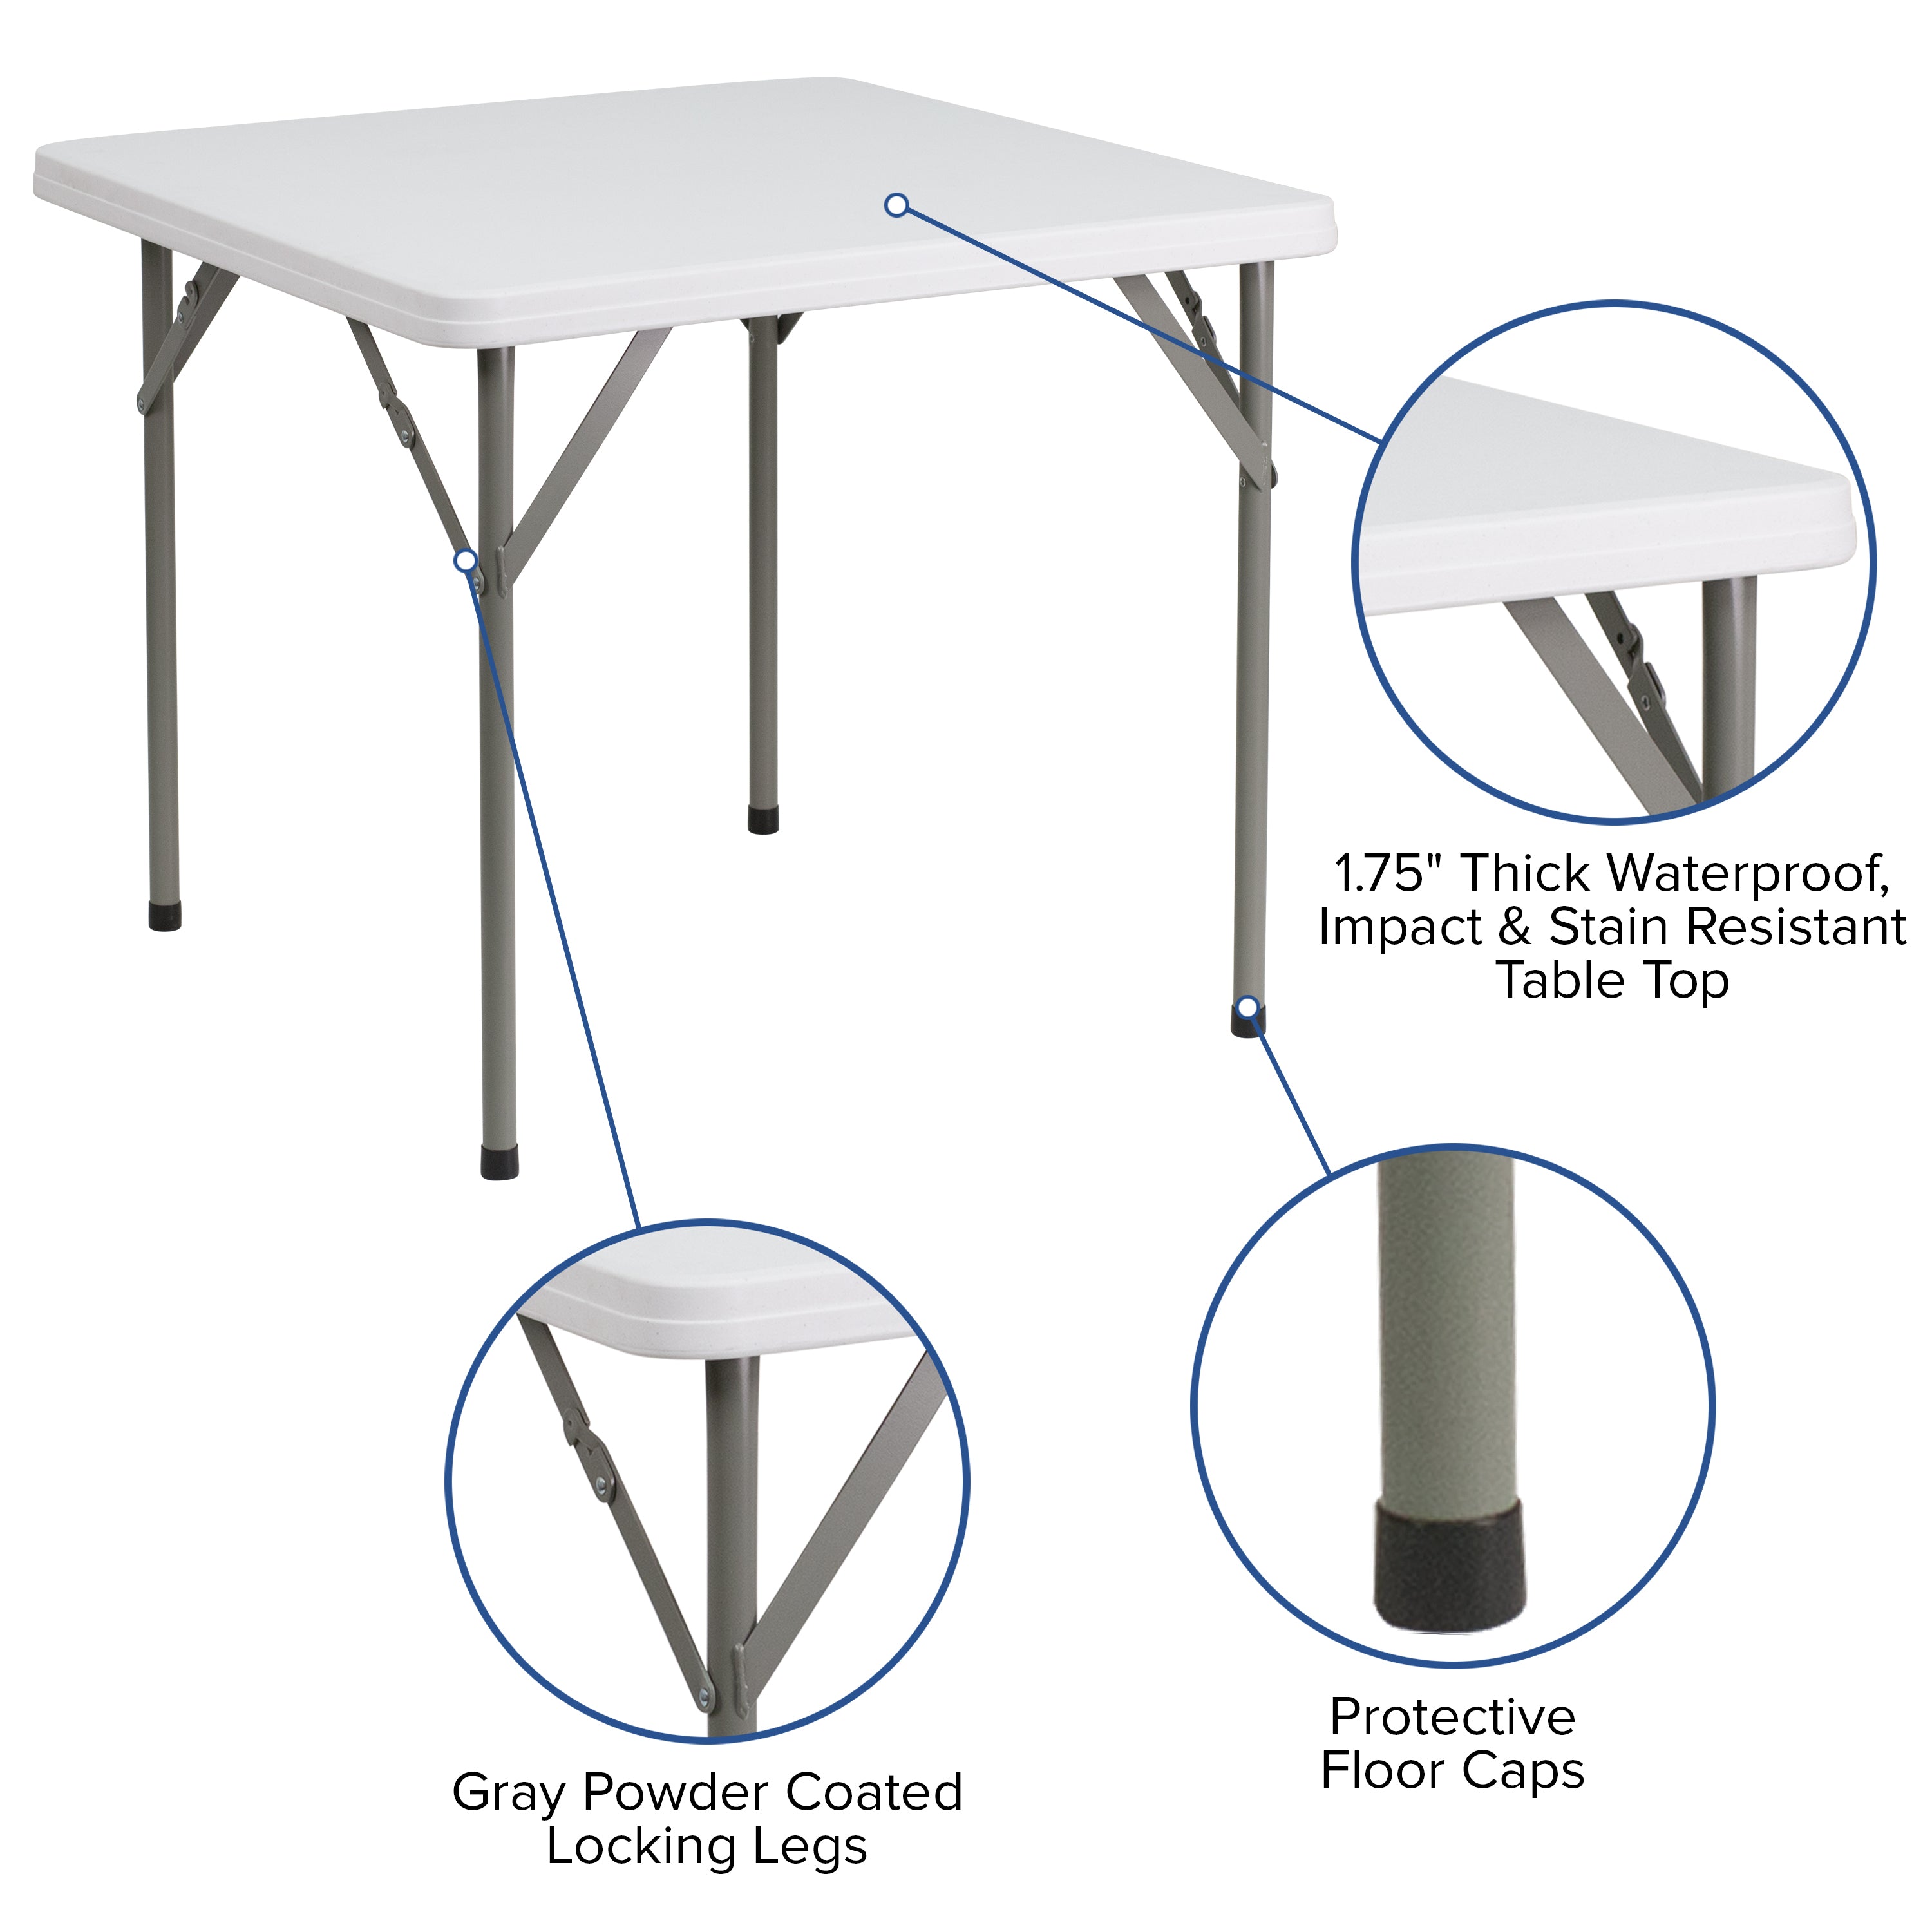 2.85-Foot Square Plastic Folding Table-Square Plastic Folding Table-Flash Furniture-Wall2Wall Furnishings